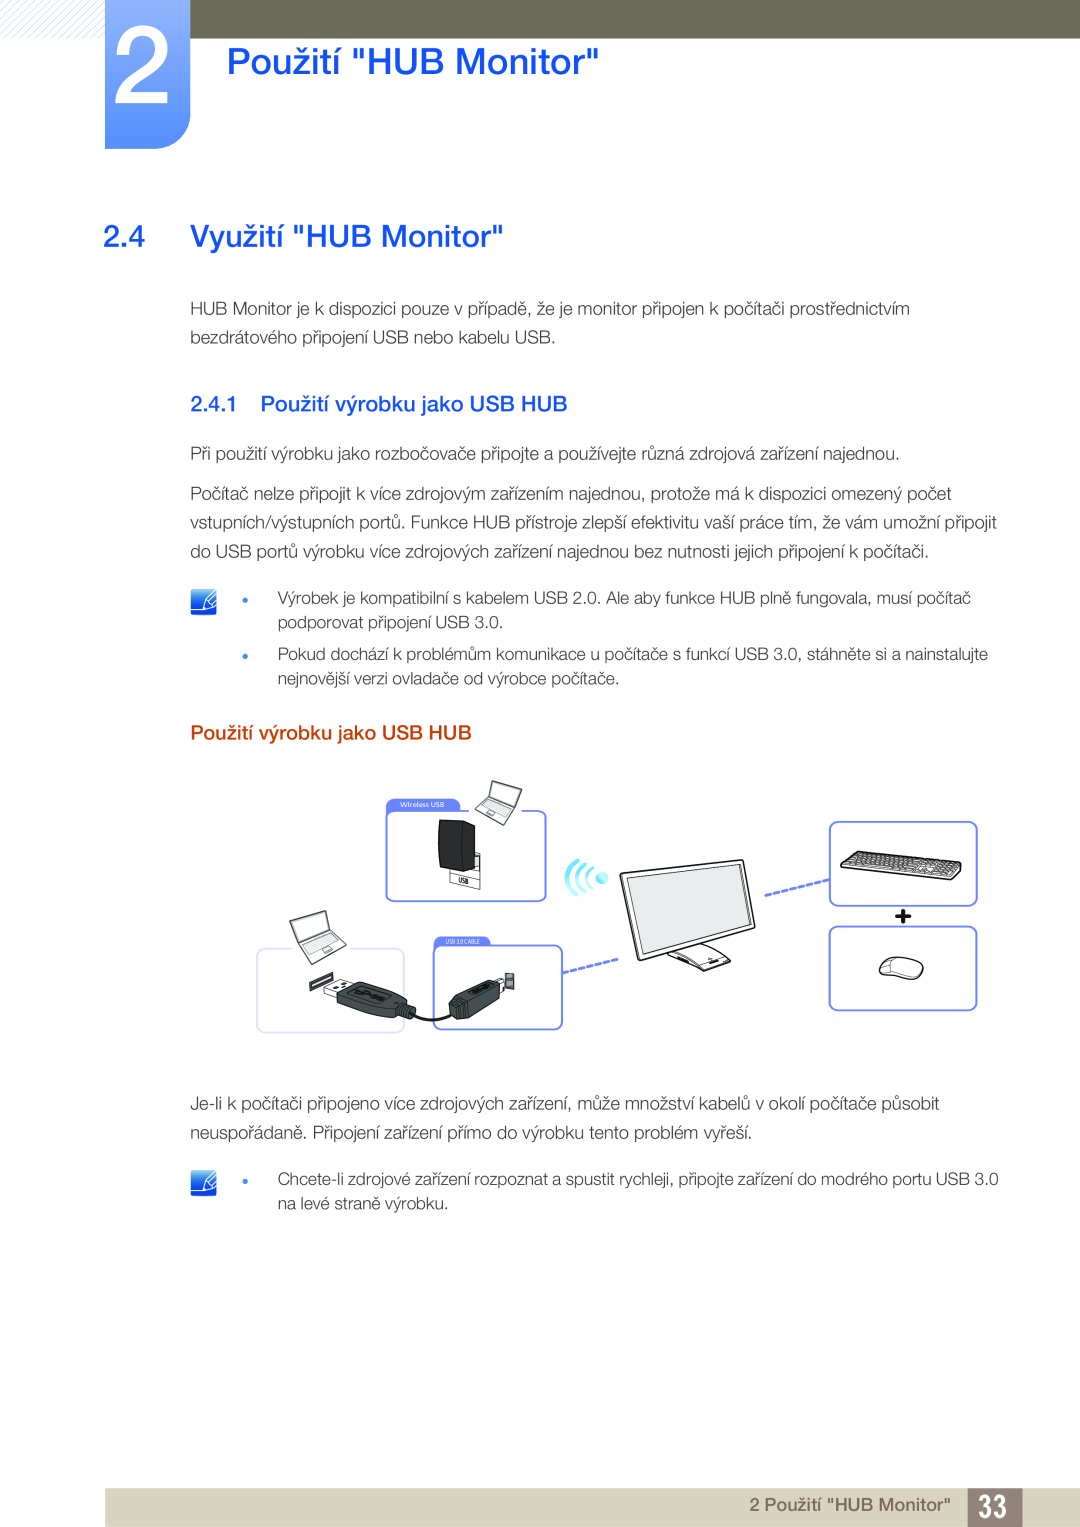 Samsung LC27A750XS/ZA, LC23A750XS/EN 2.4 Využití HUB Monitor, 2.4.1 Použití výrobku jako USB HUB, 2 Použití HUB Monitor 